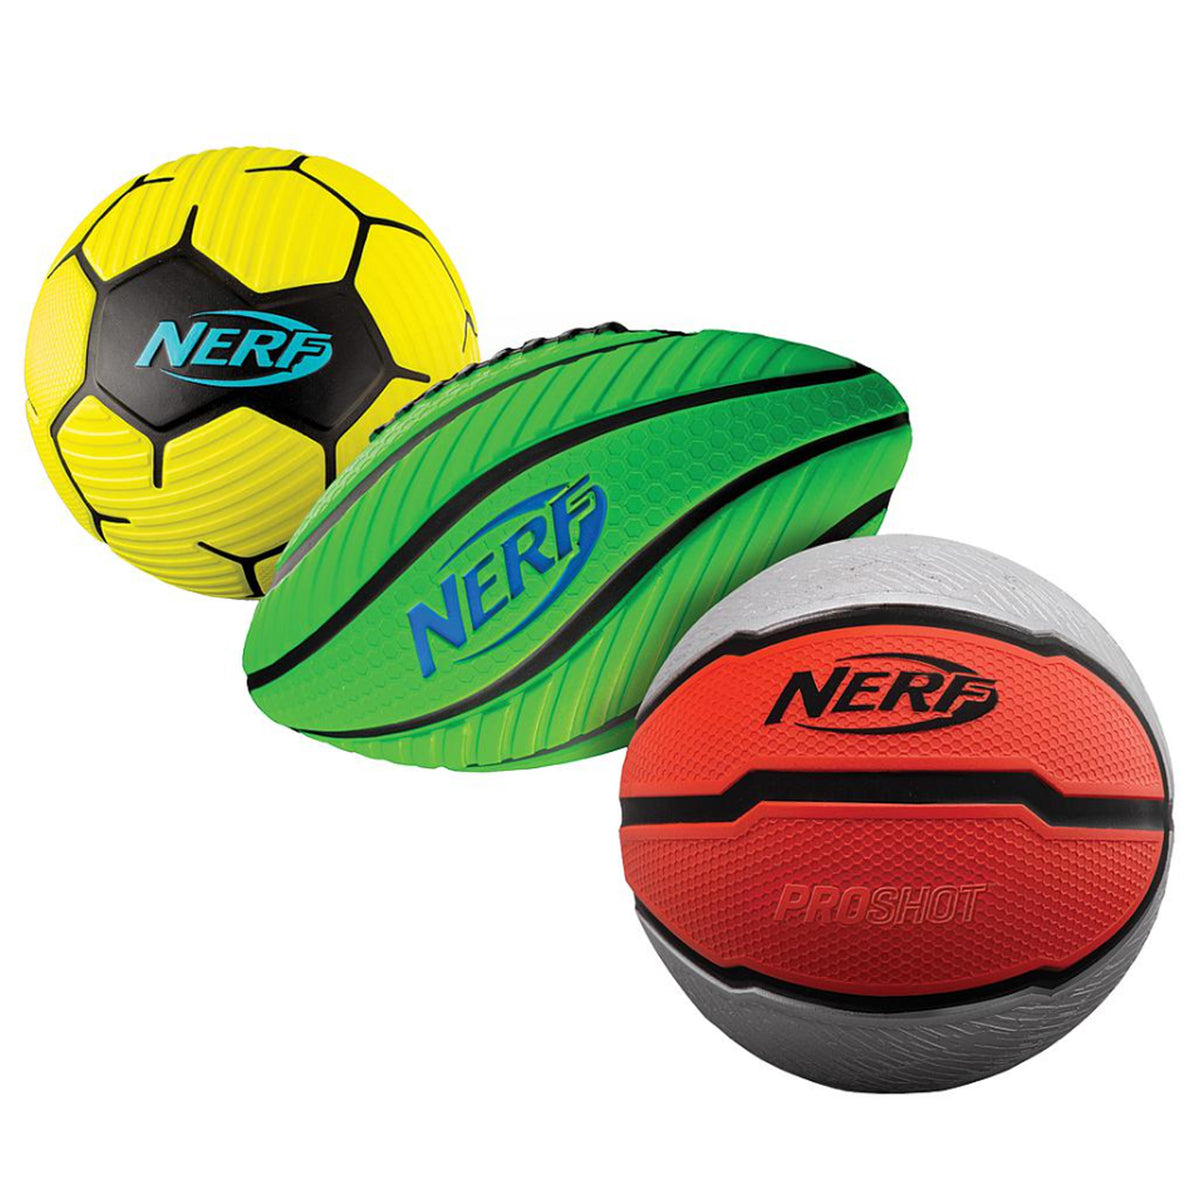 Nerf Proshot Multisport Foam Ball Set